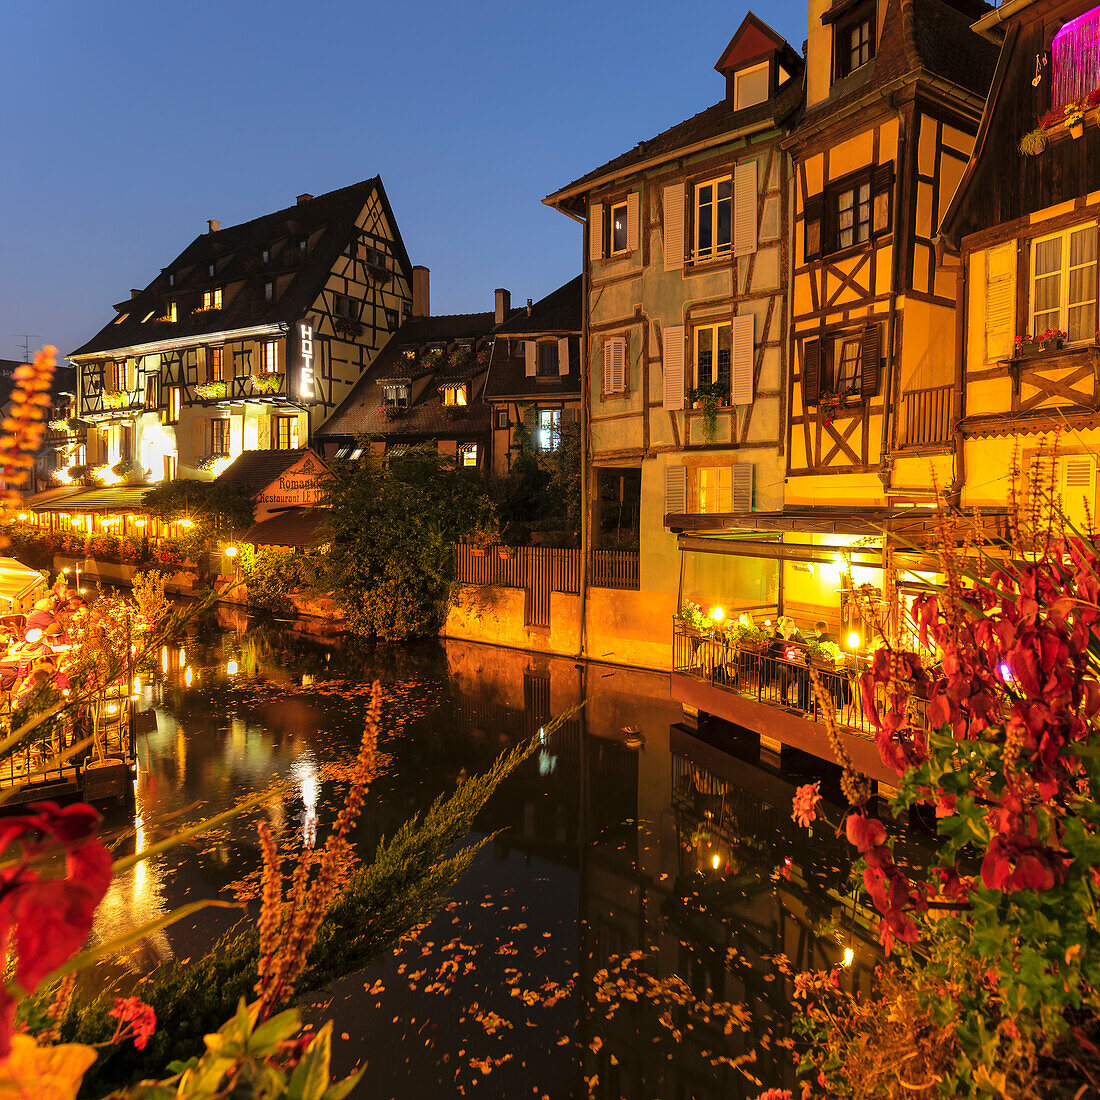 Restaurant beside the Lauch River, Petite Venise district, Colmar, Alsace, Haut-Rhin, France, Europe